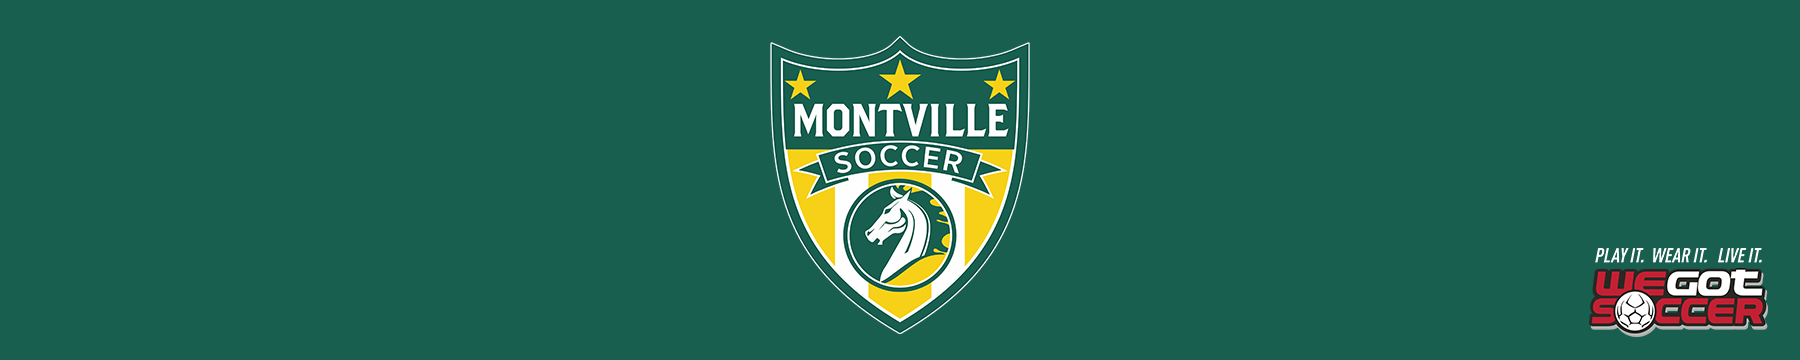 Montville Soccer